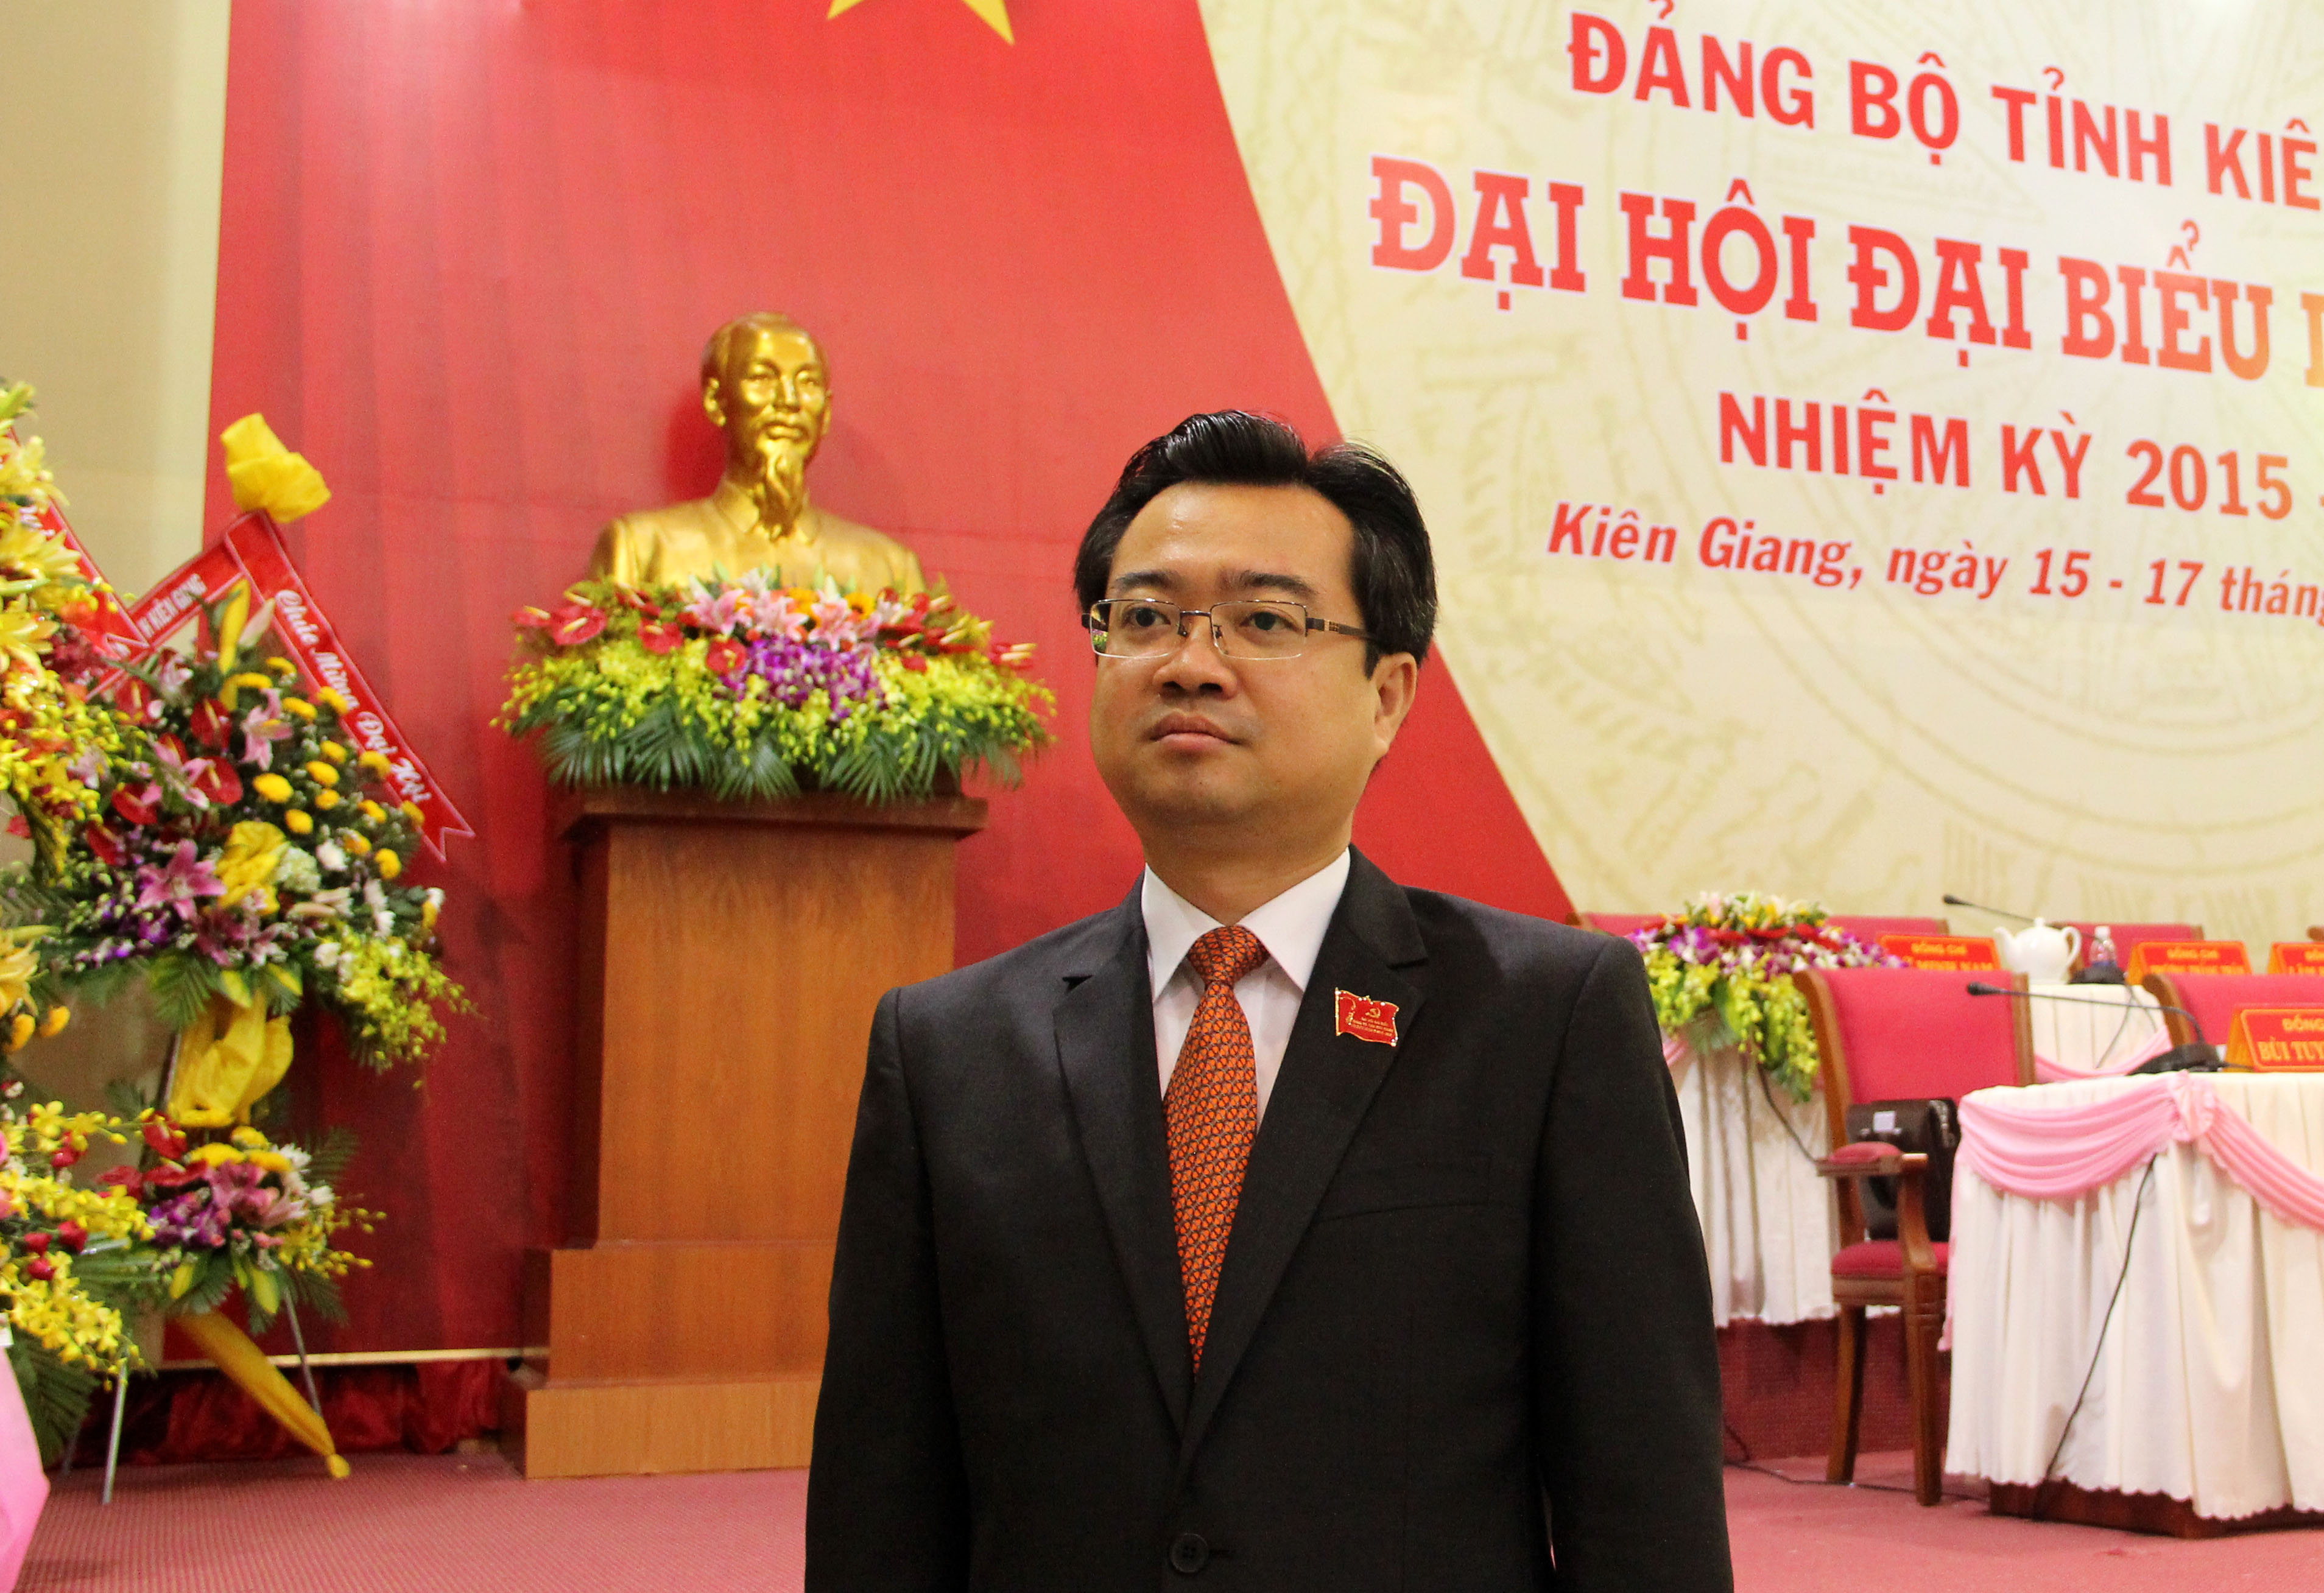 Ông Nguyễn Thanh Nghị (39 tuổi), được bầu làm Bí thư Tỉnh ủy Kiên Giang, nhiệm kỳ 2015-2020 - Ảnh: Hải Lăng